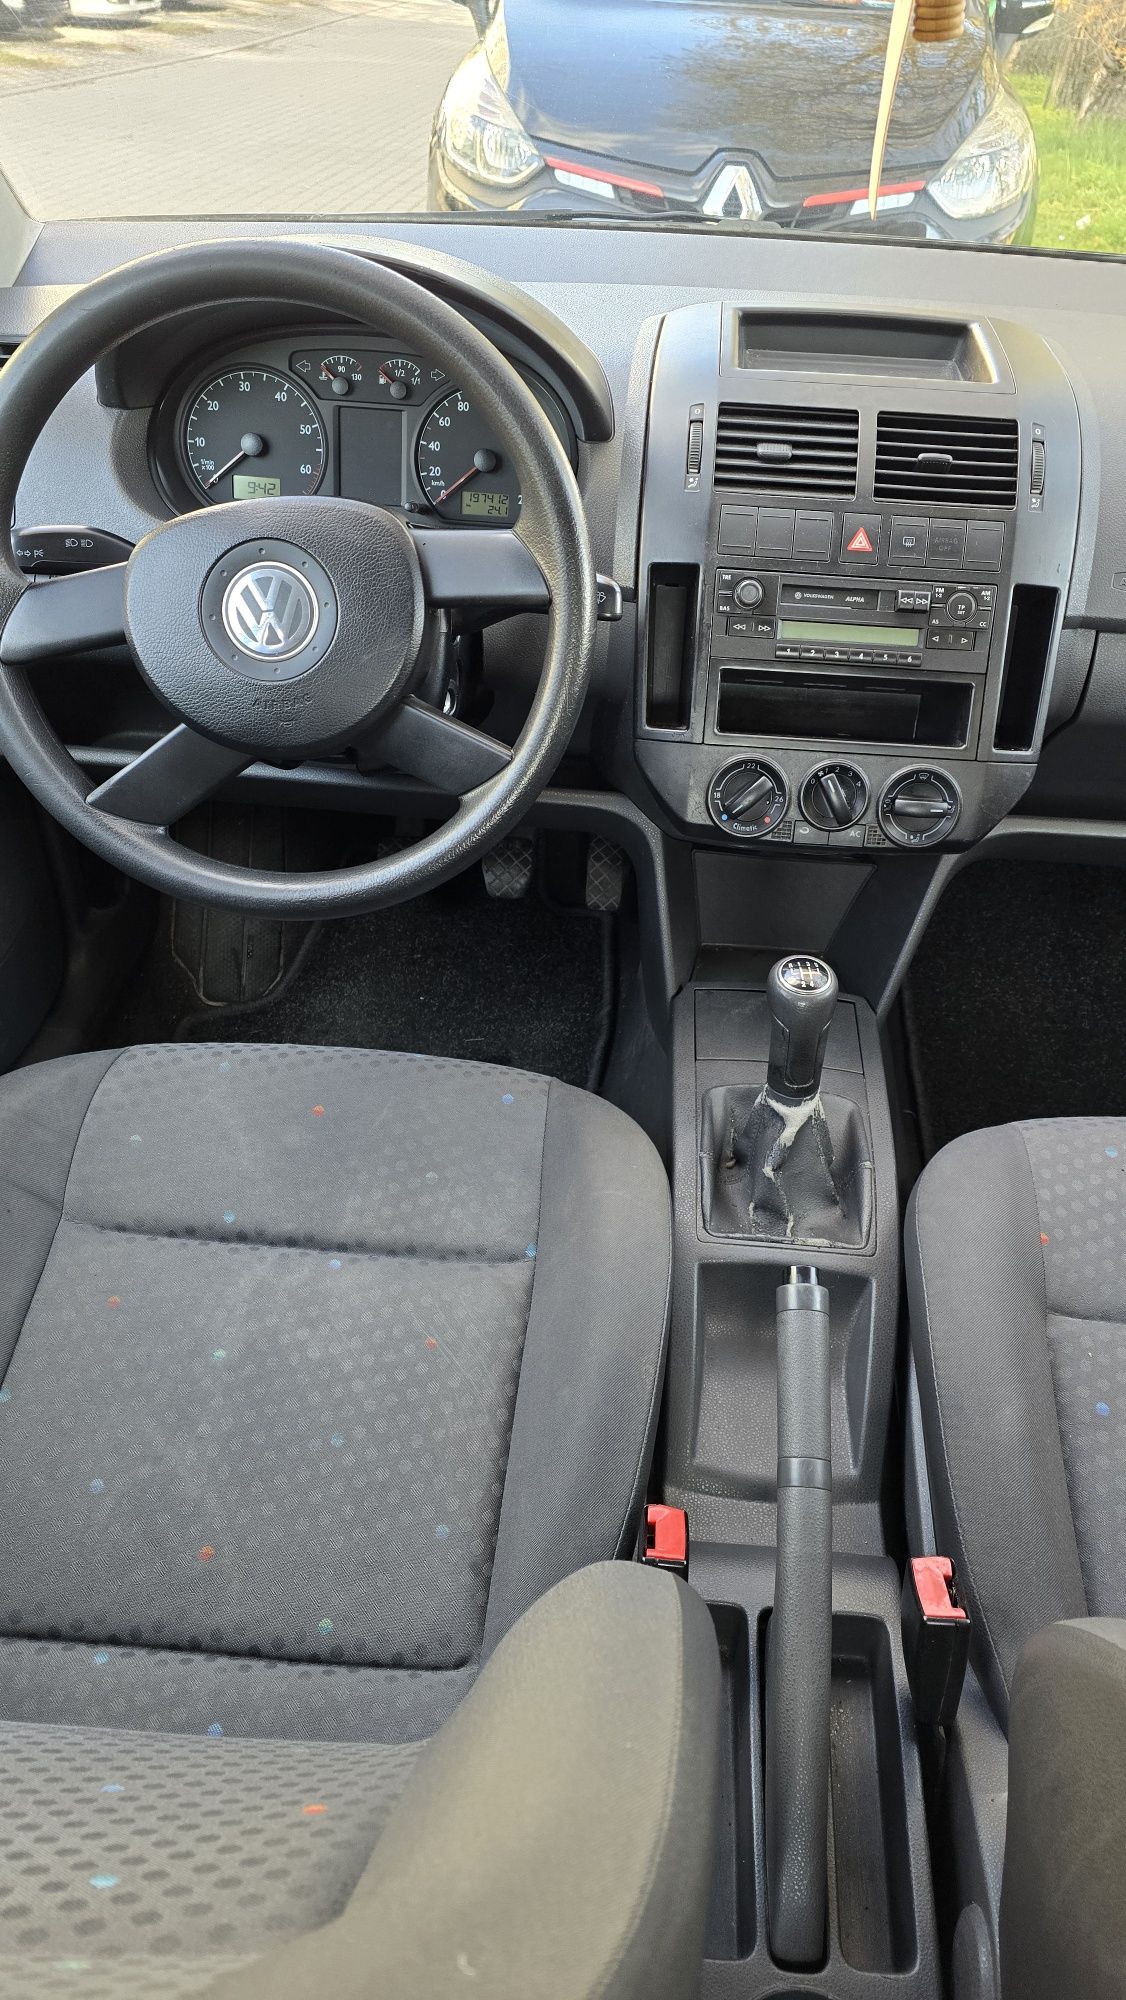 VW polo 5 drzwi klima 1.2 benzyna